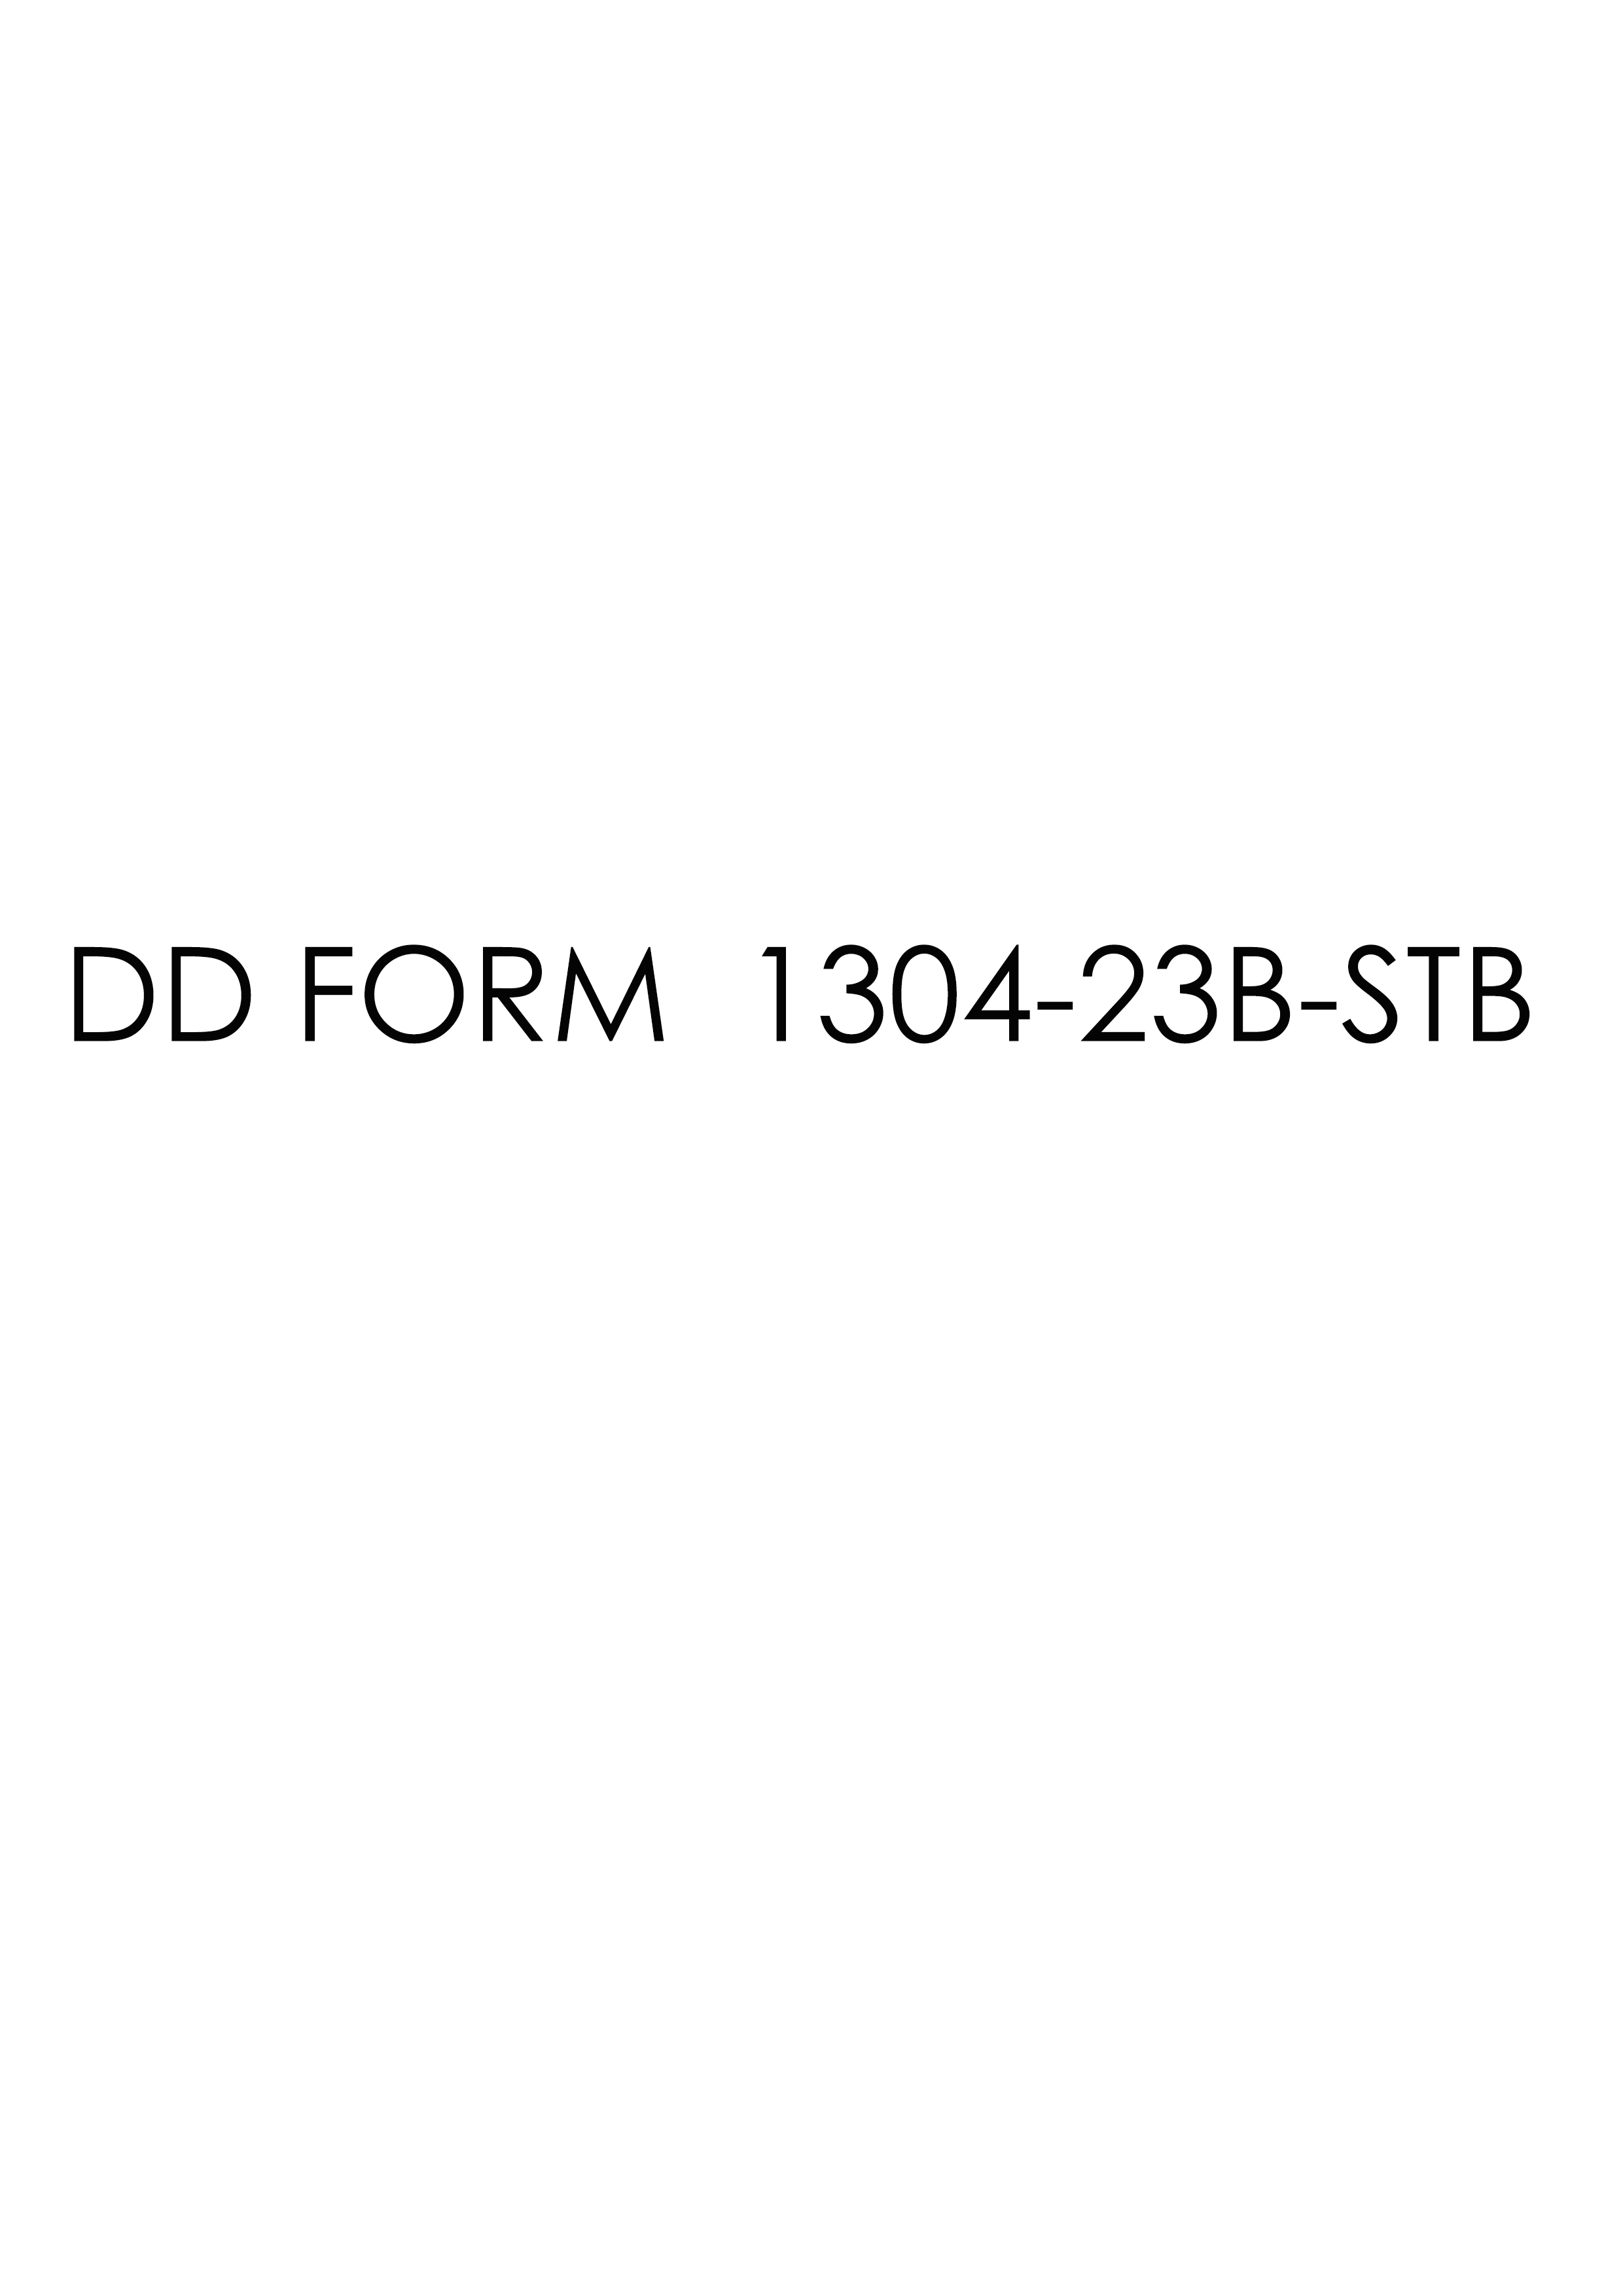 Download dd Form 1304-23B-STB